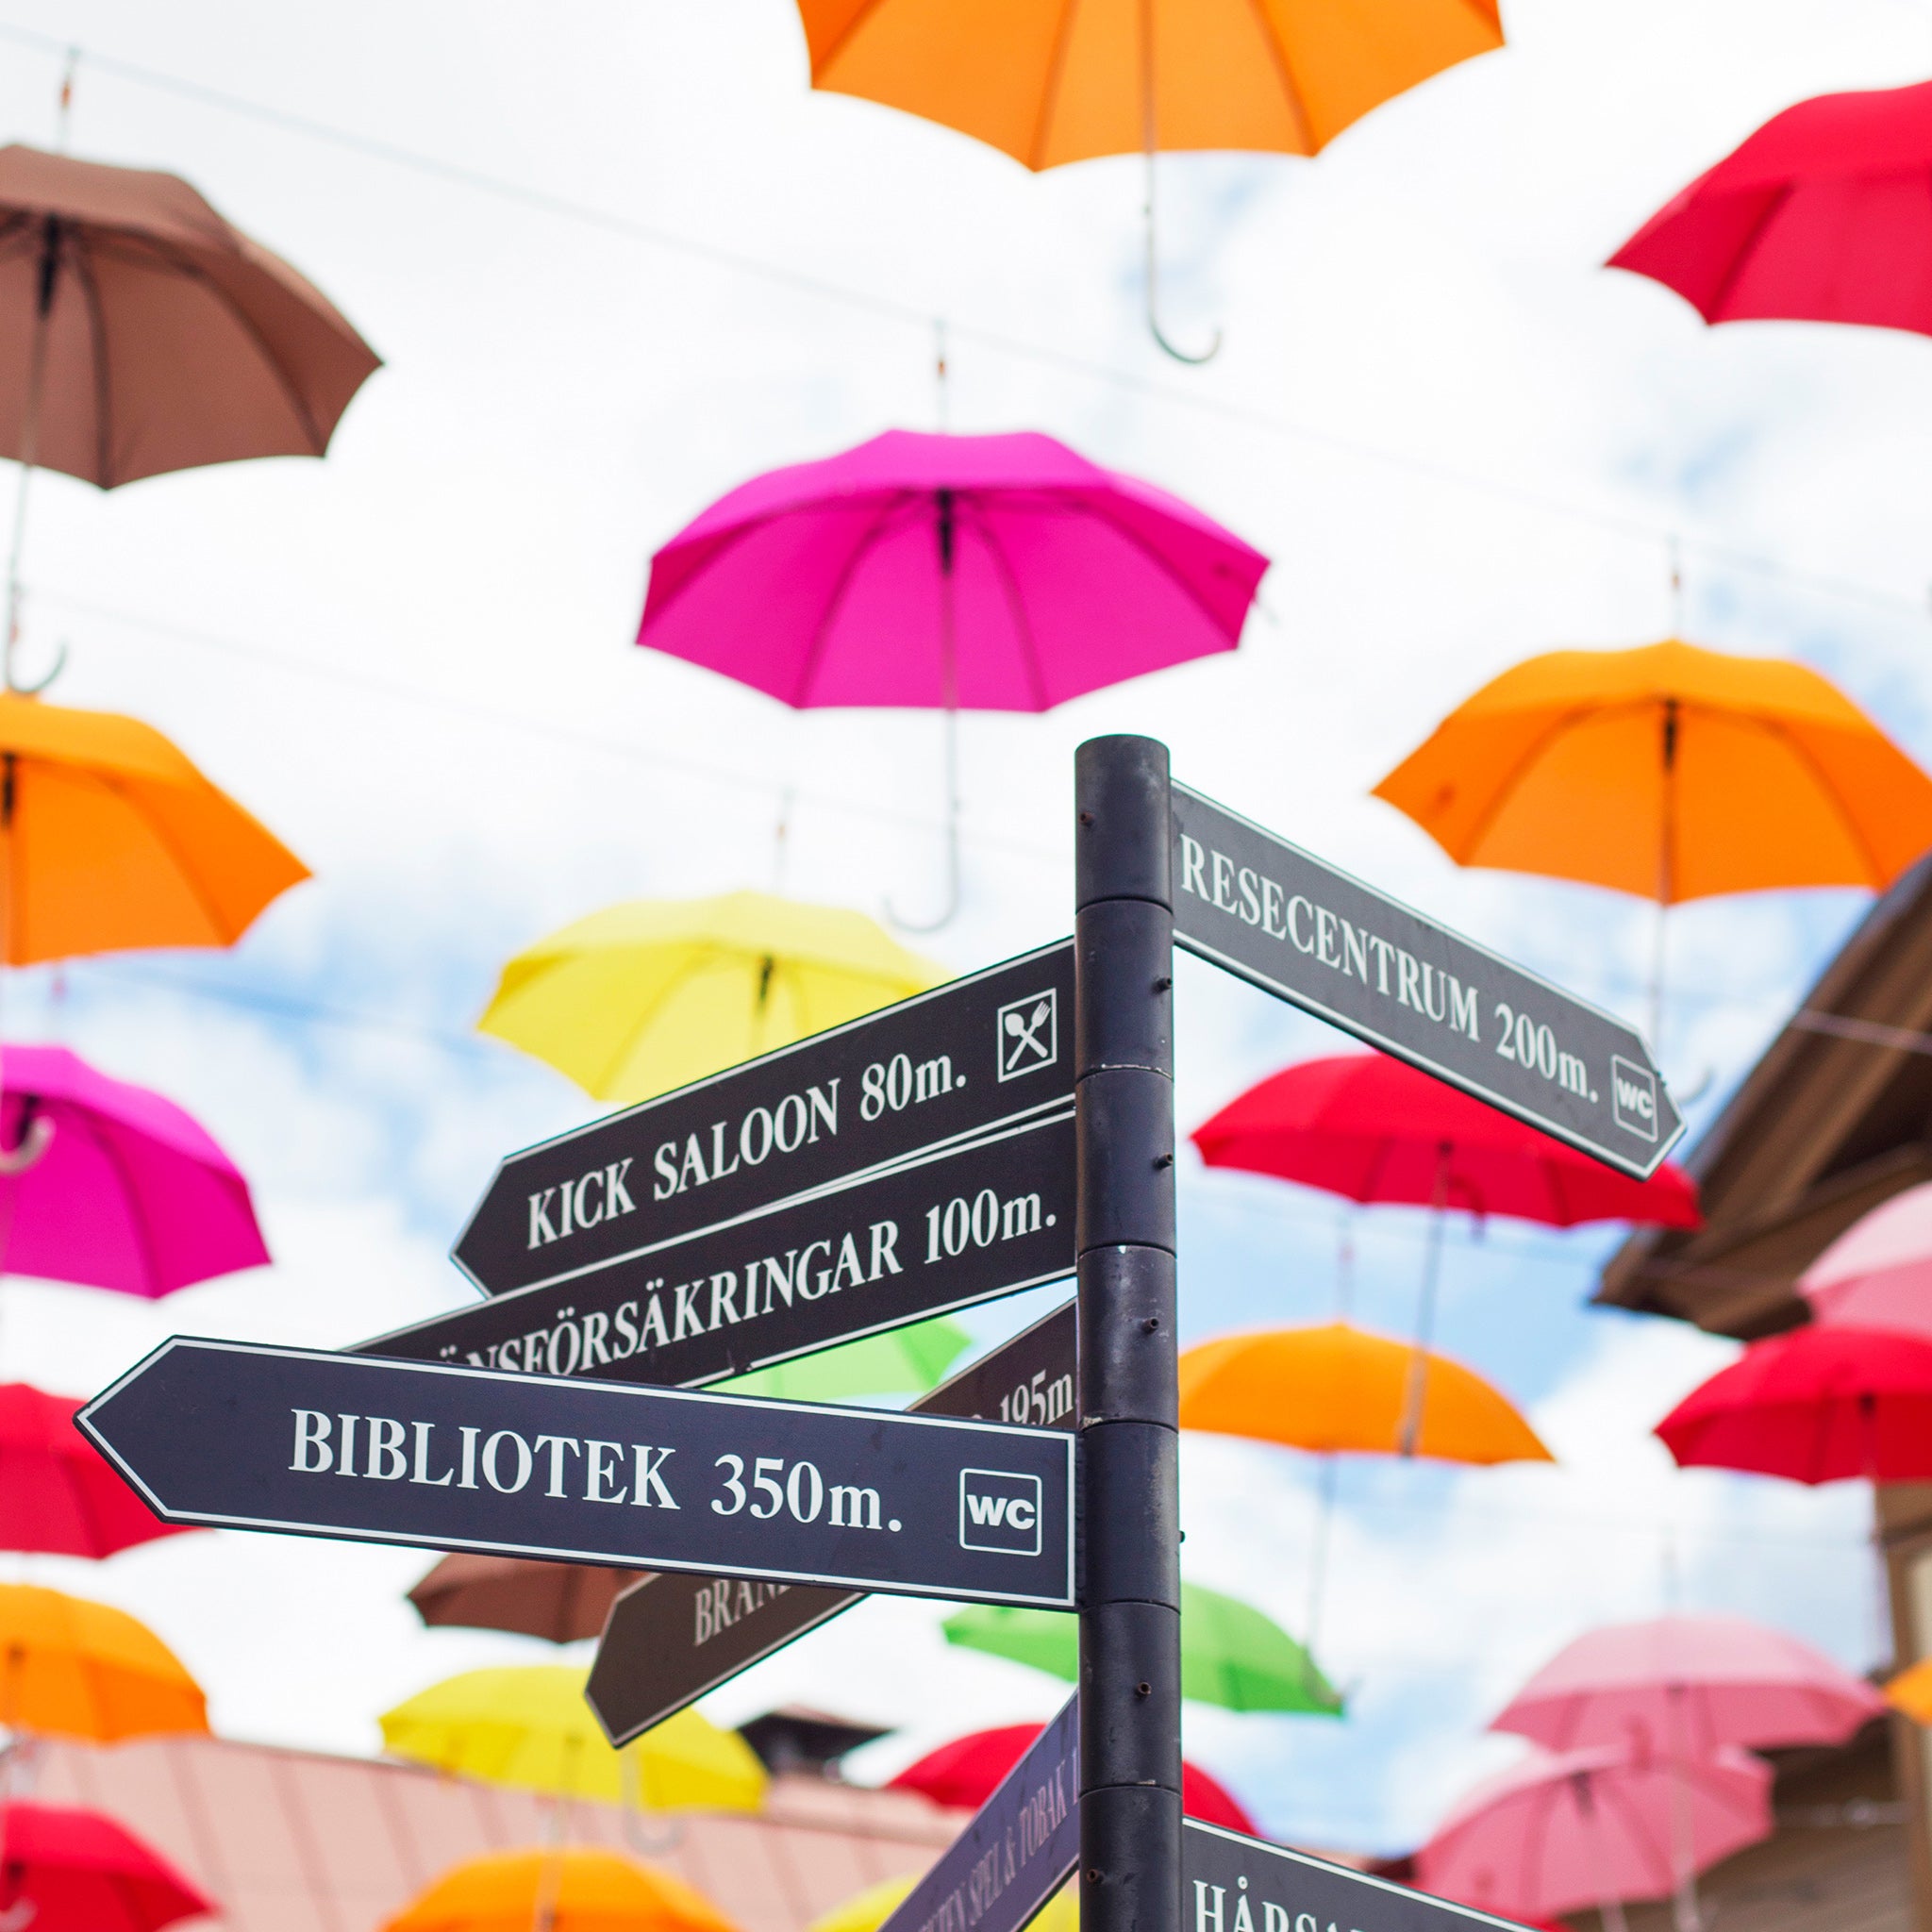 Bokhandlargränd i Ljusdal. Dekorerad med färgglada paraplyer.